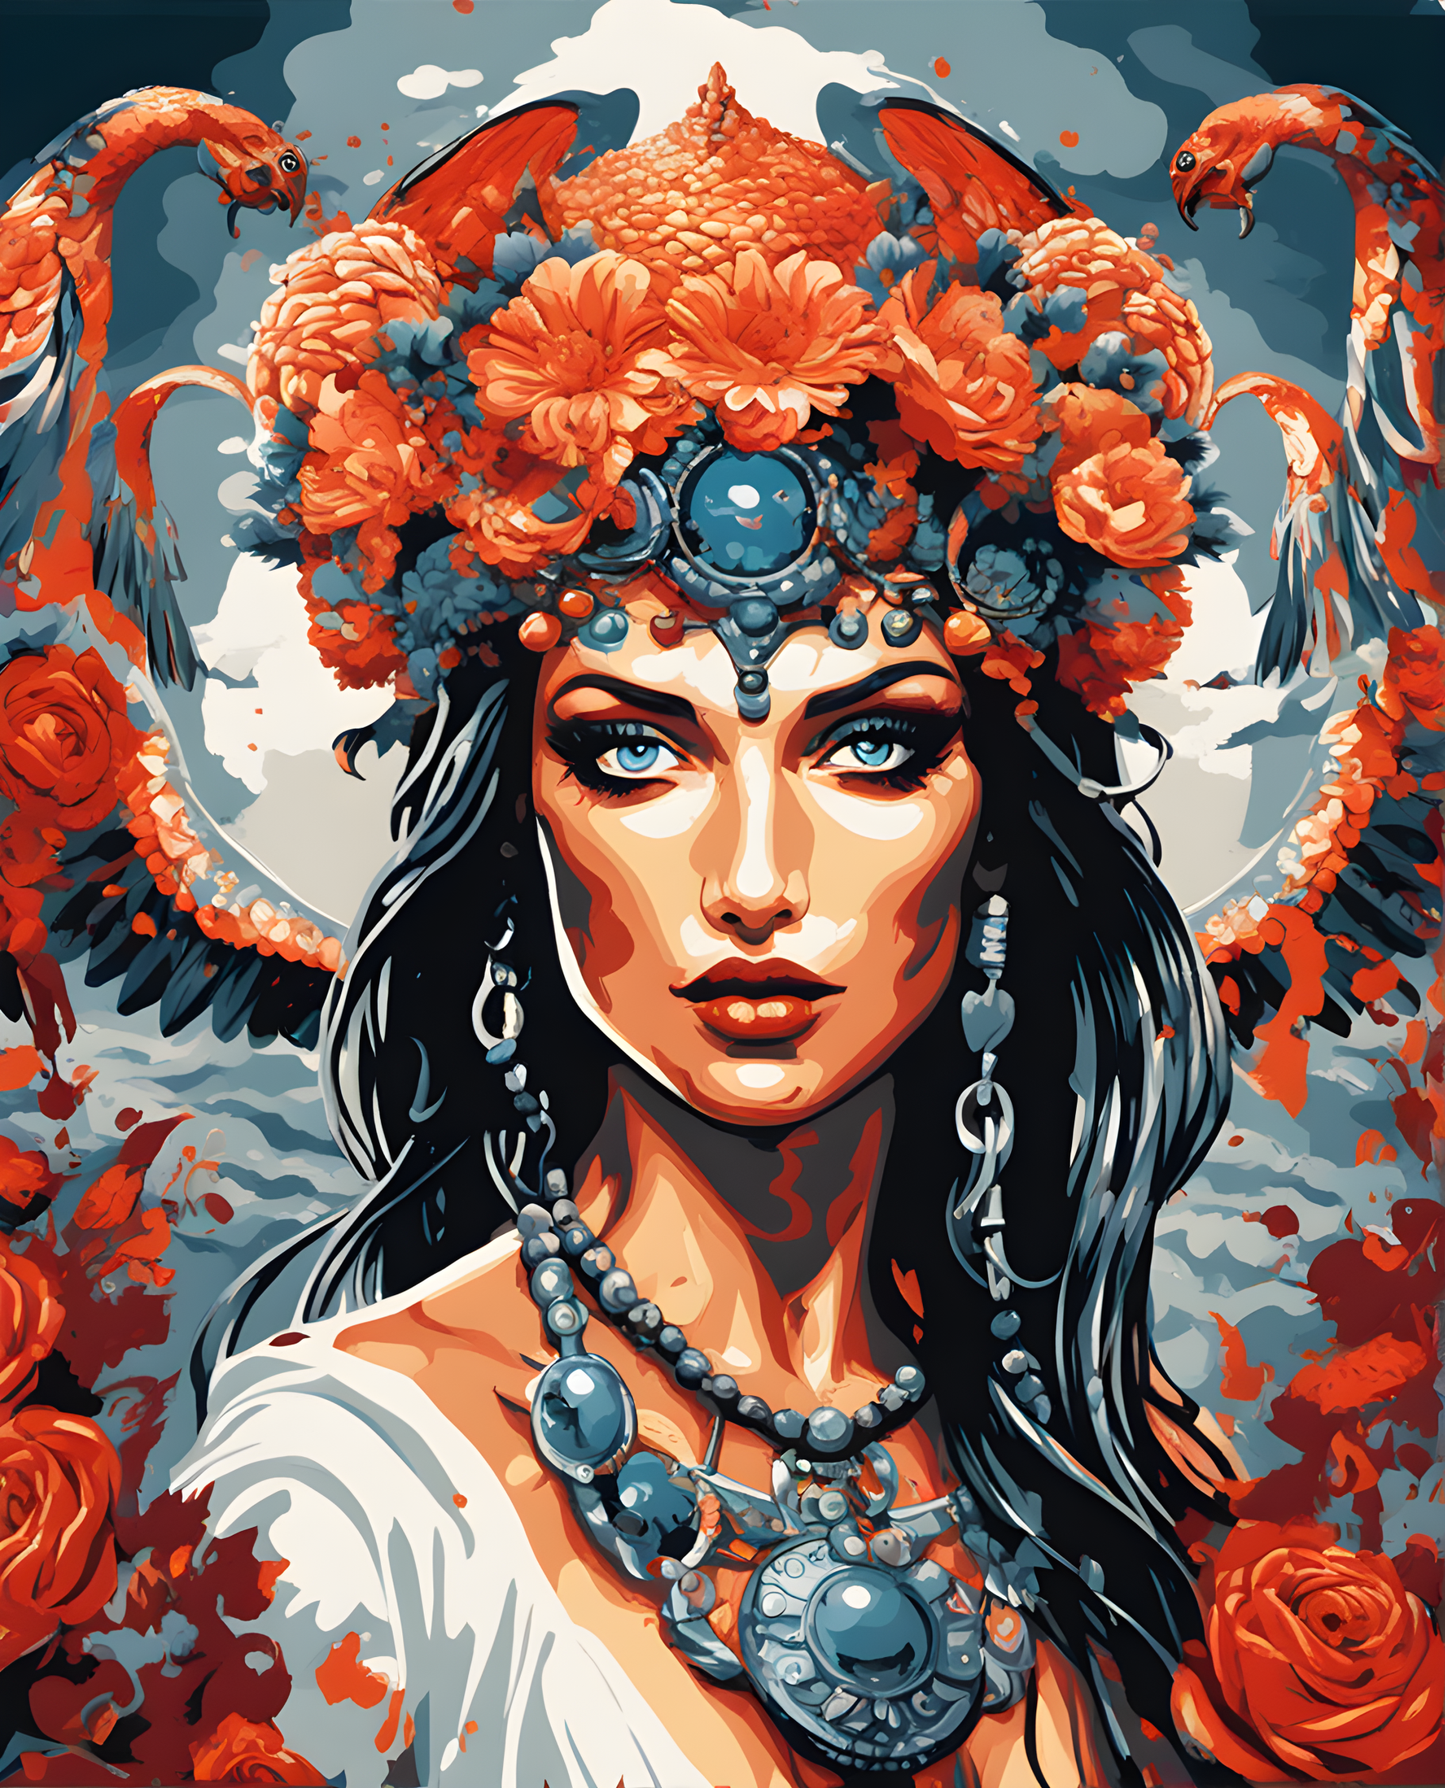 Nemesis goddess of revenge (4) - Van-Go Paint-By-Number Kit